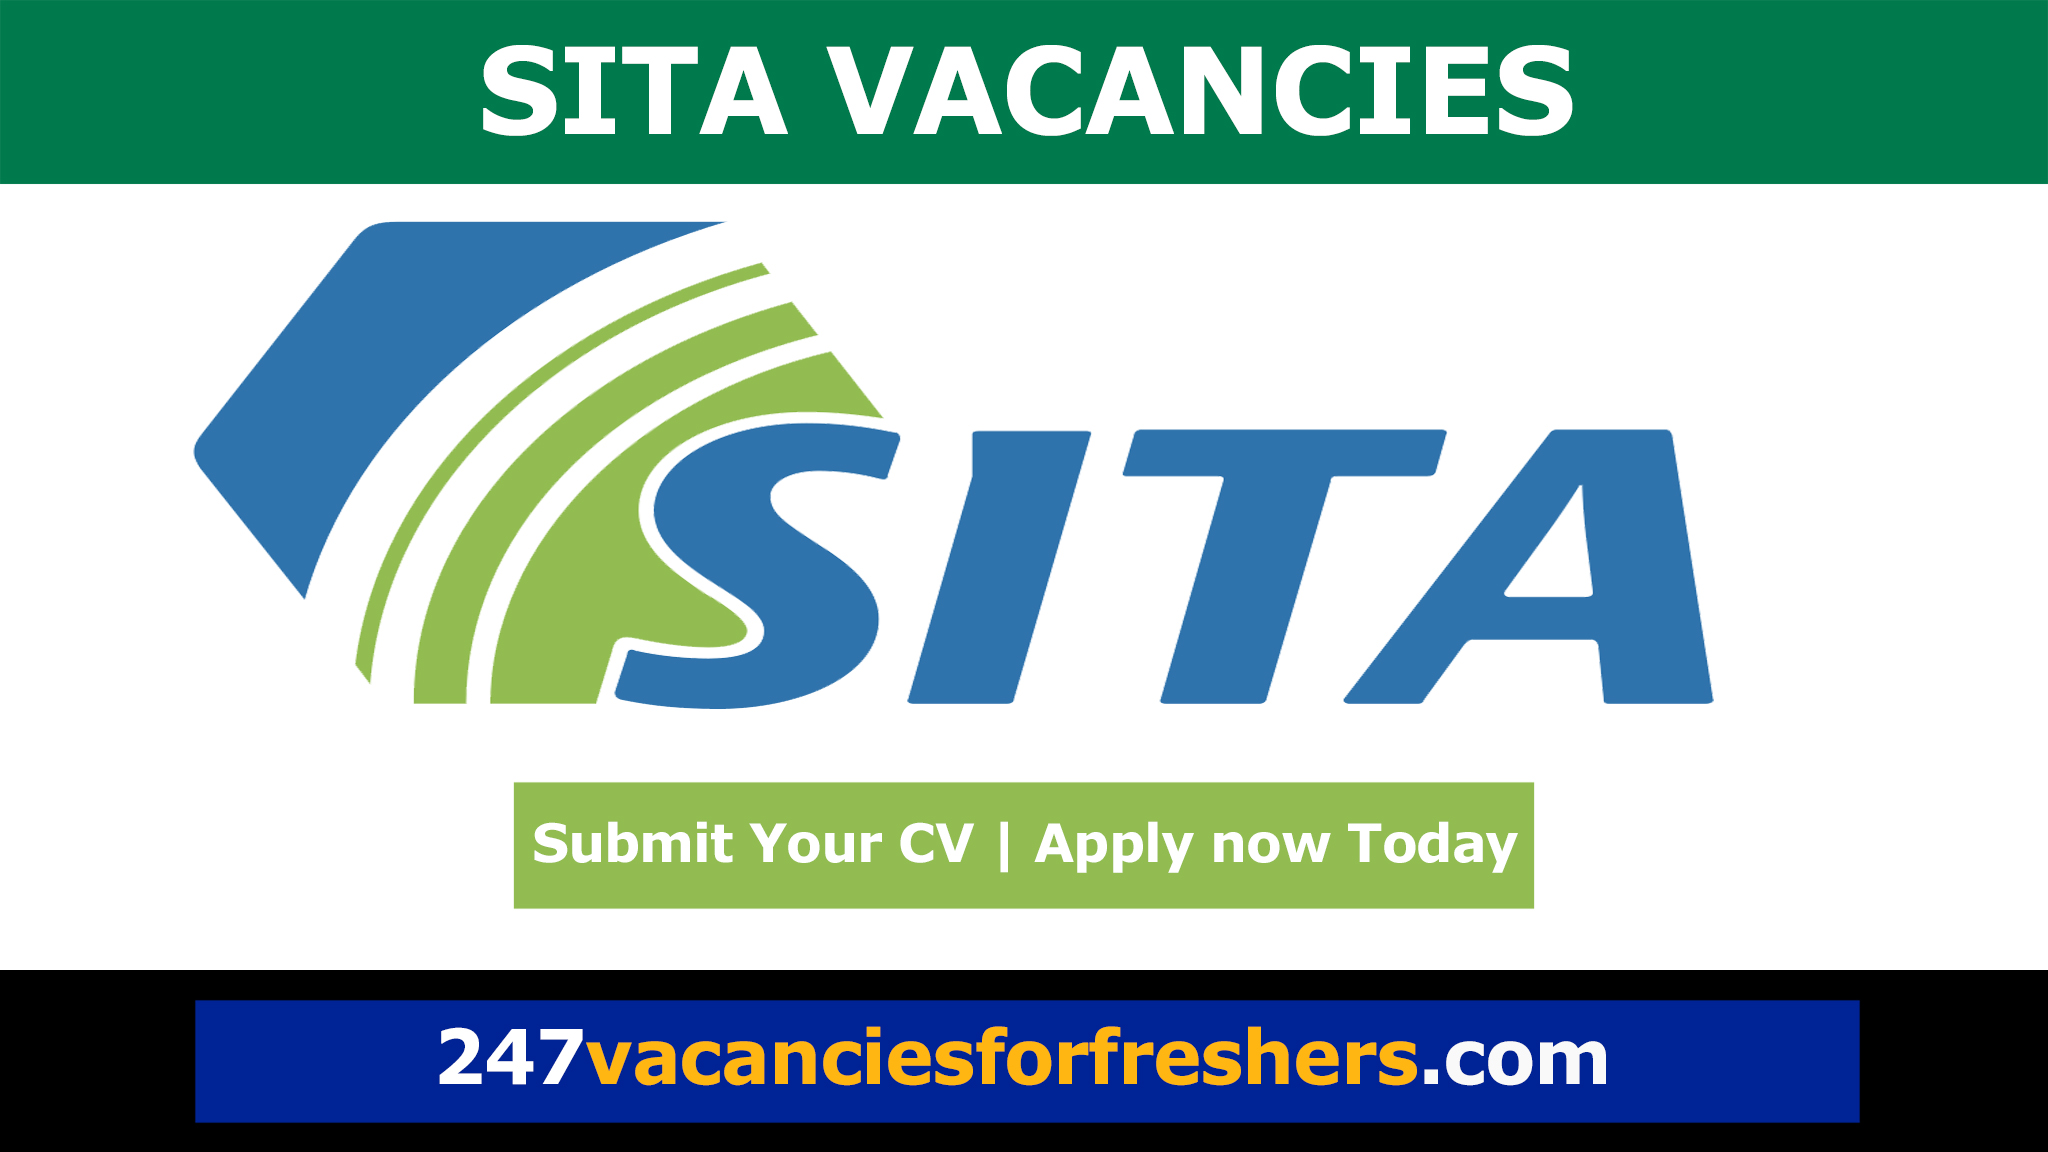 SITA Vacancies